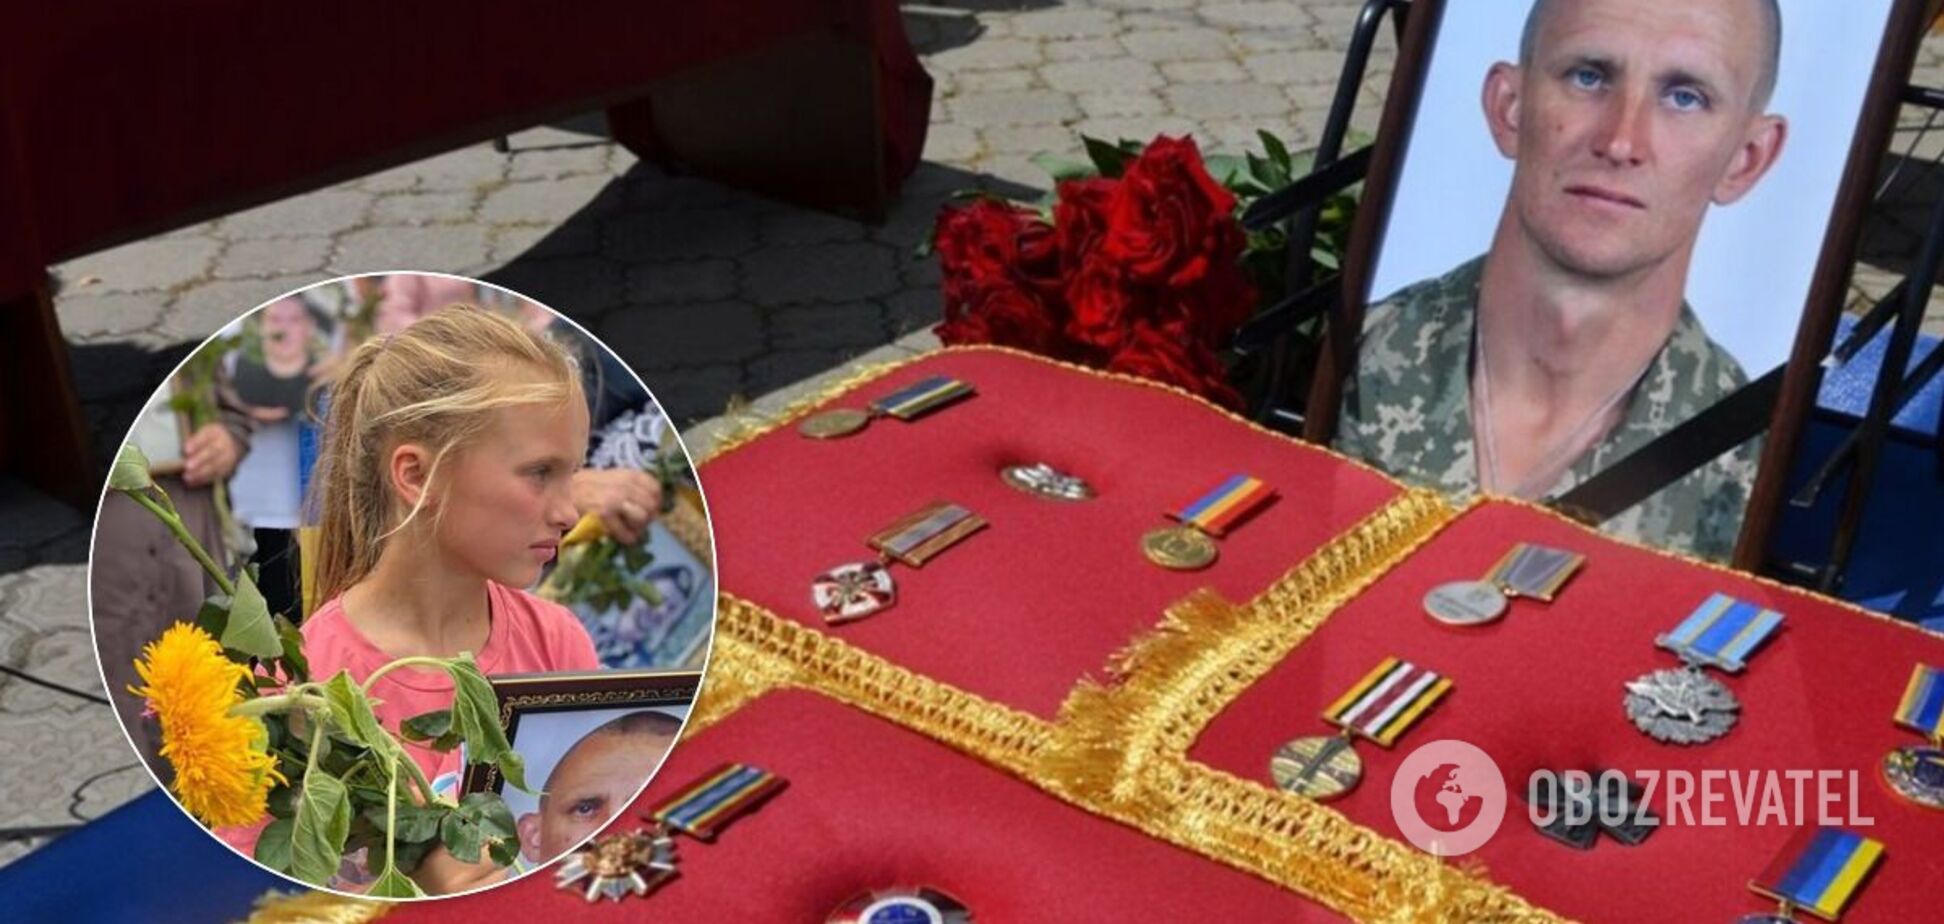 Фото дочери погибшего разведчика растрогало украинцев